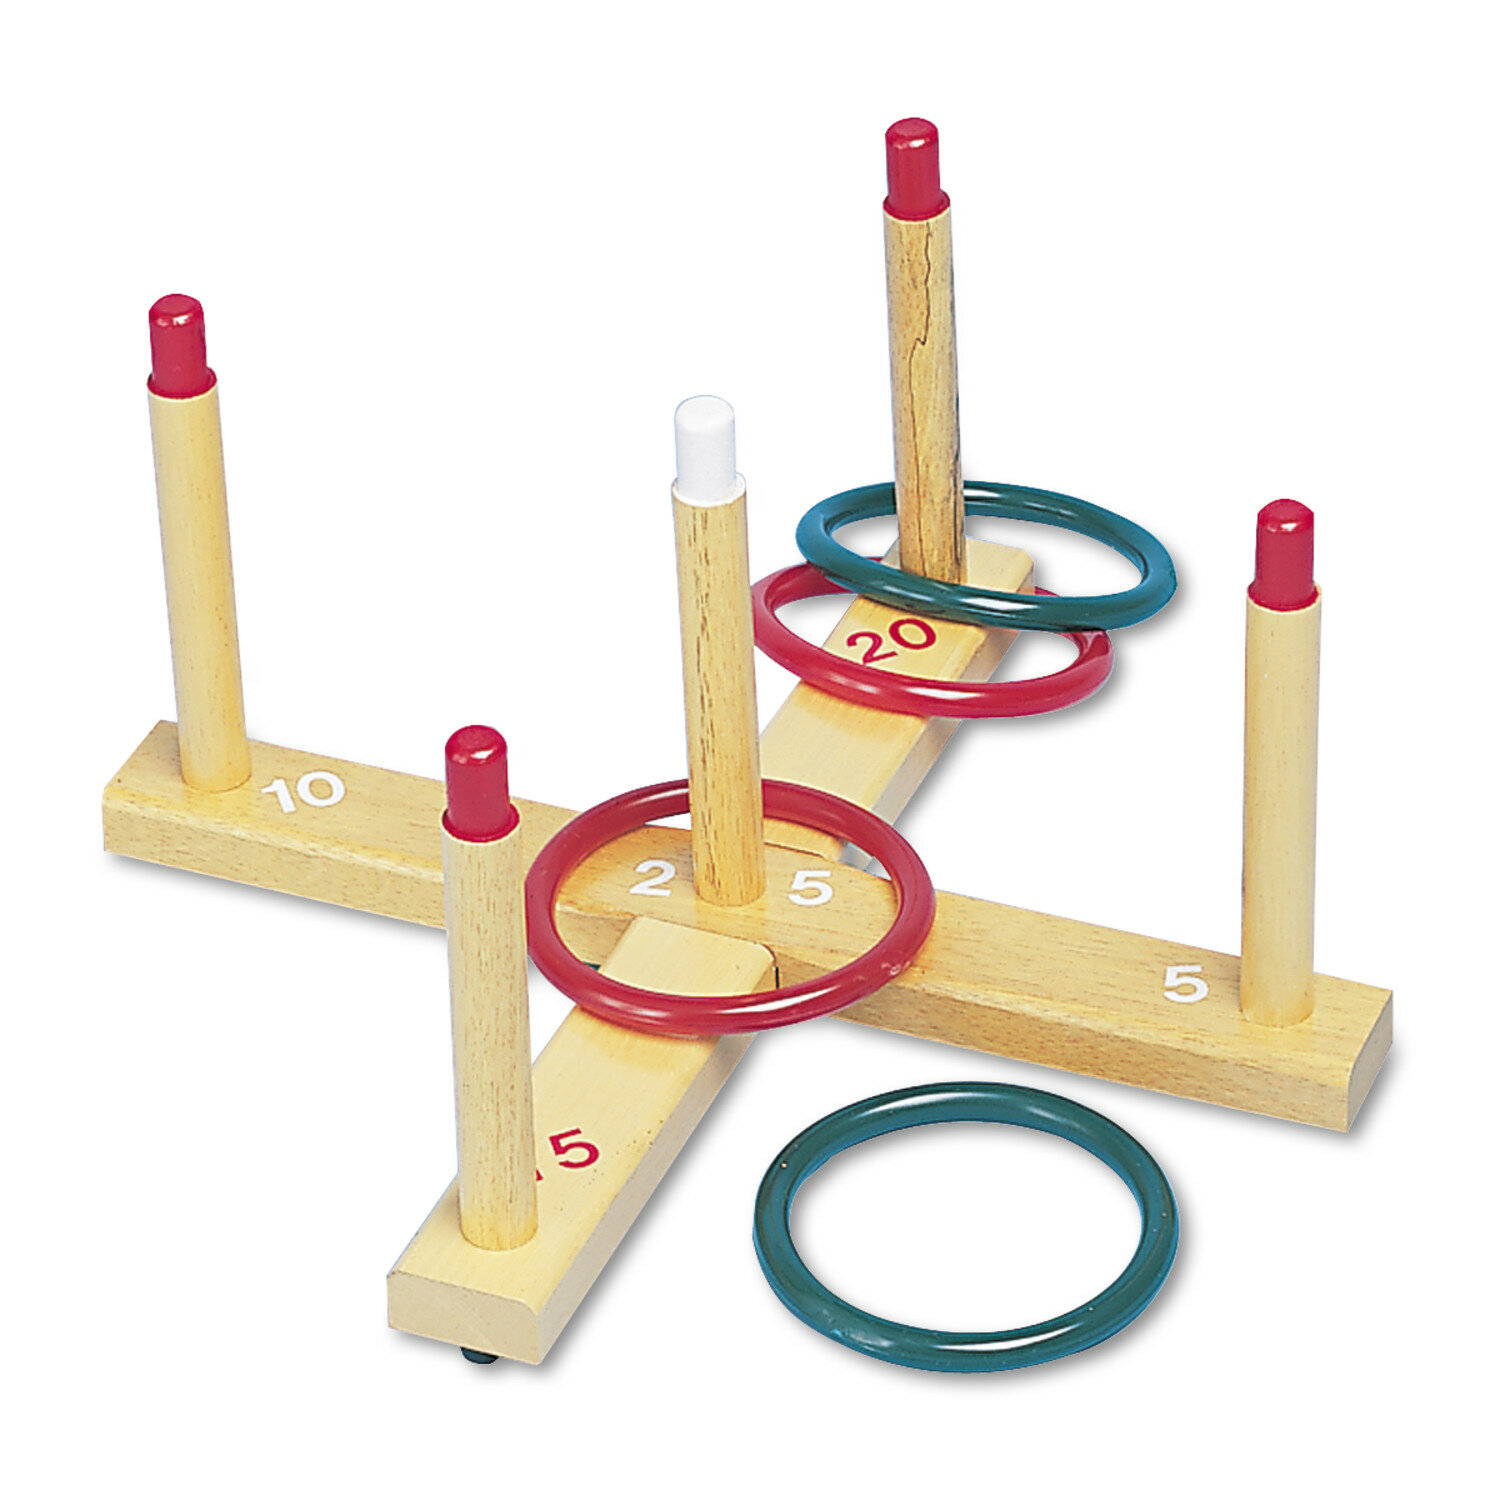 5pcs Toss Rings Circle Hoopla Game Fun Throw to Hook Kids Children Toys Kd 